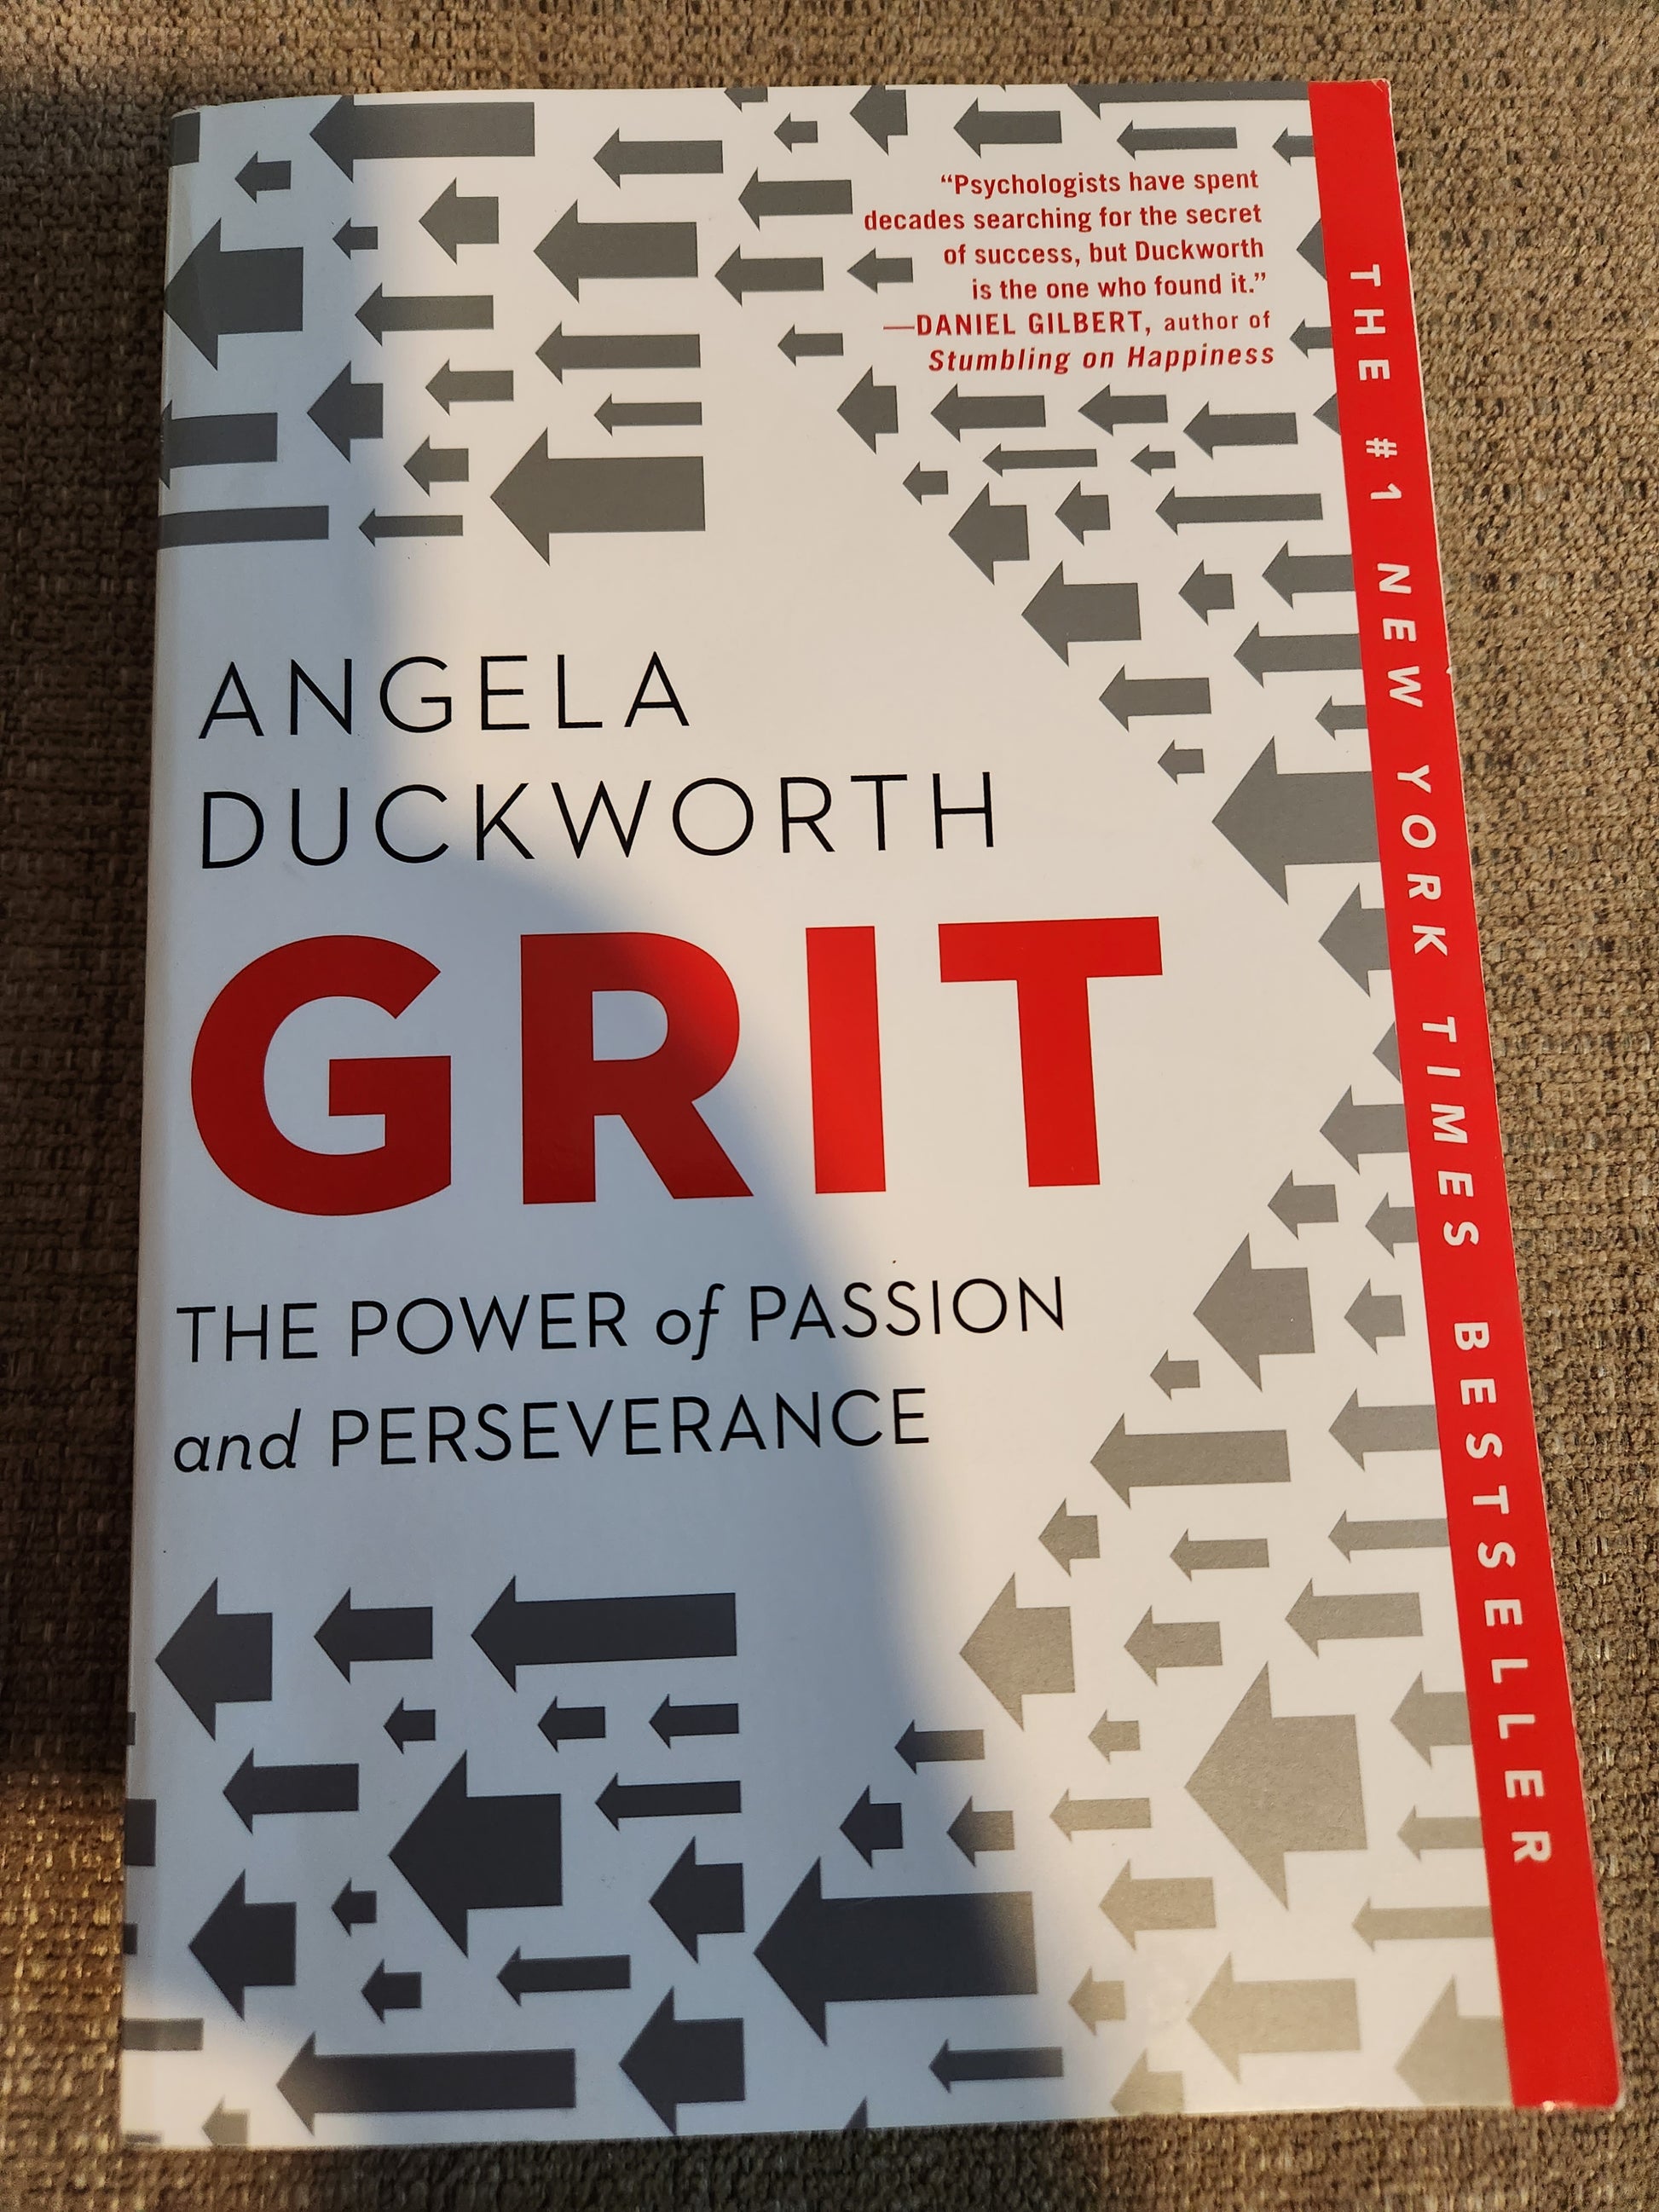 "Grit" by Angela Duckworth - Dead Tree Dreams Bookstore